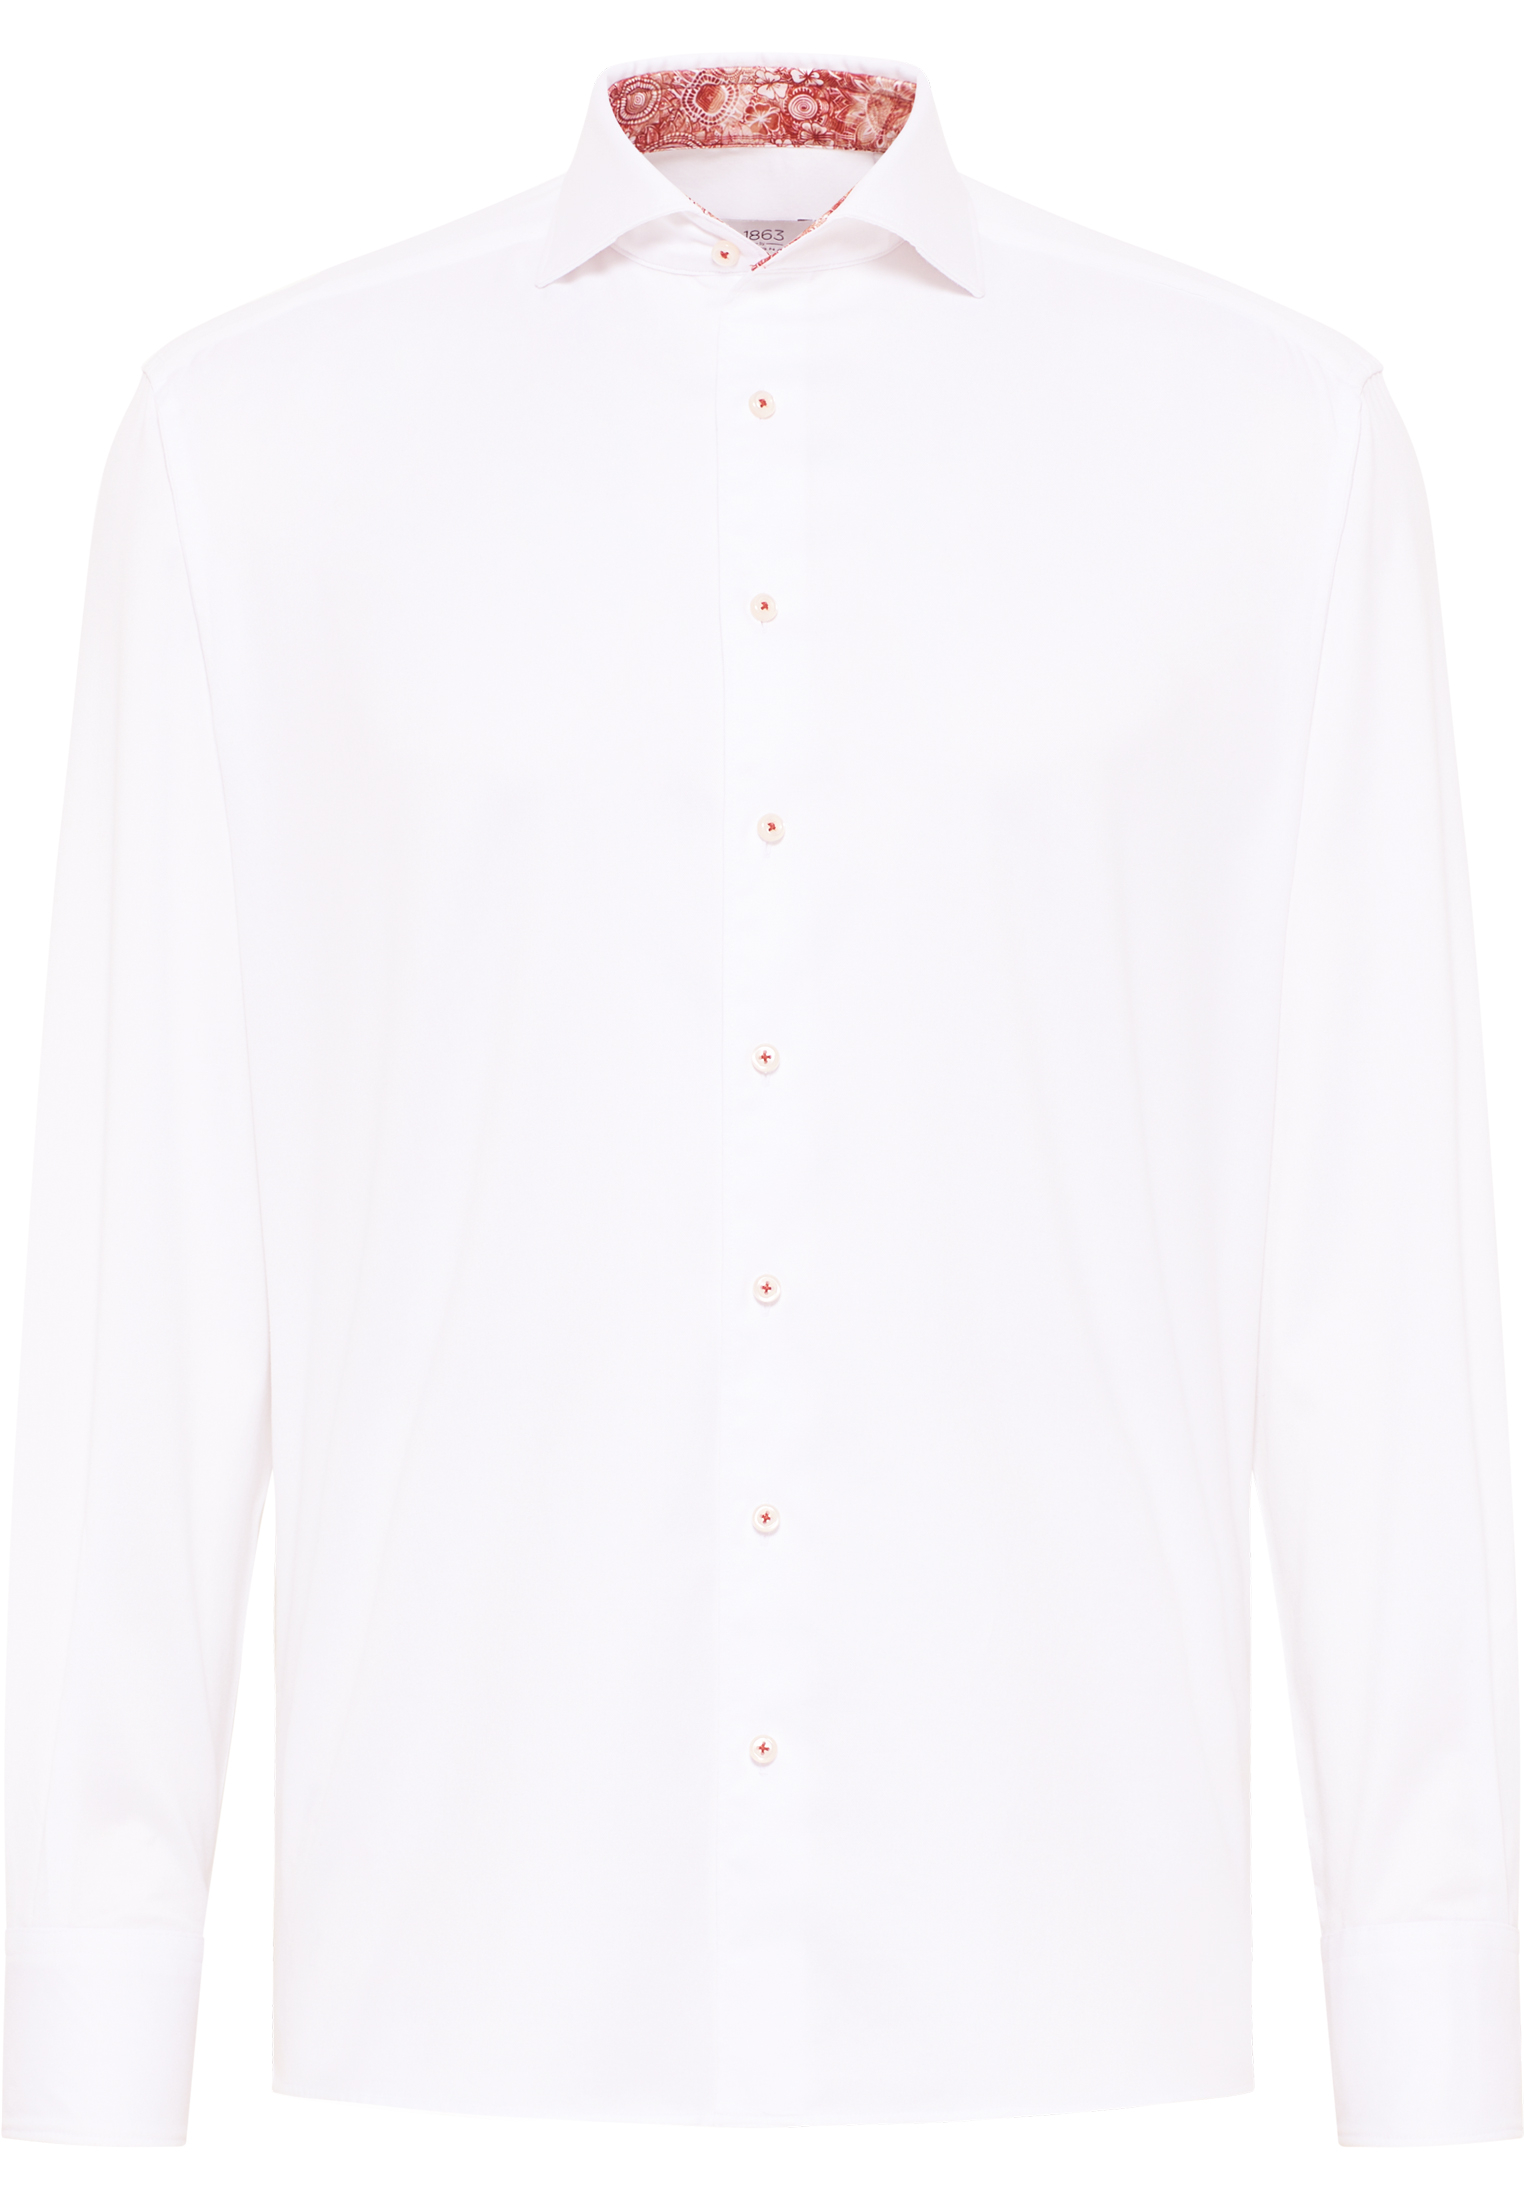 COMFORT FIT Soft Luxury Shirt in weiß unifarben